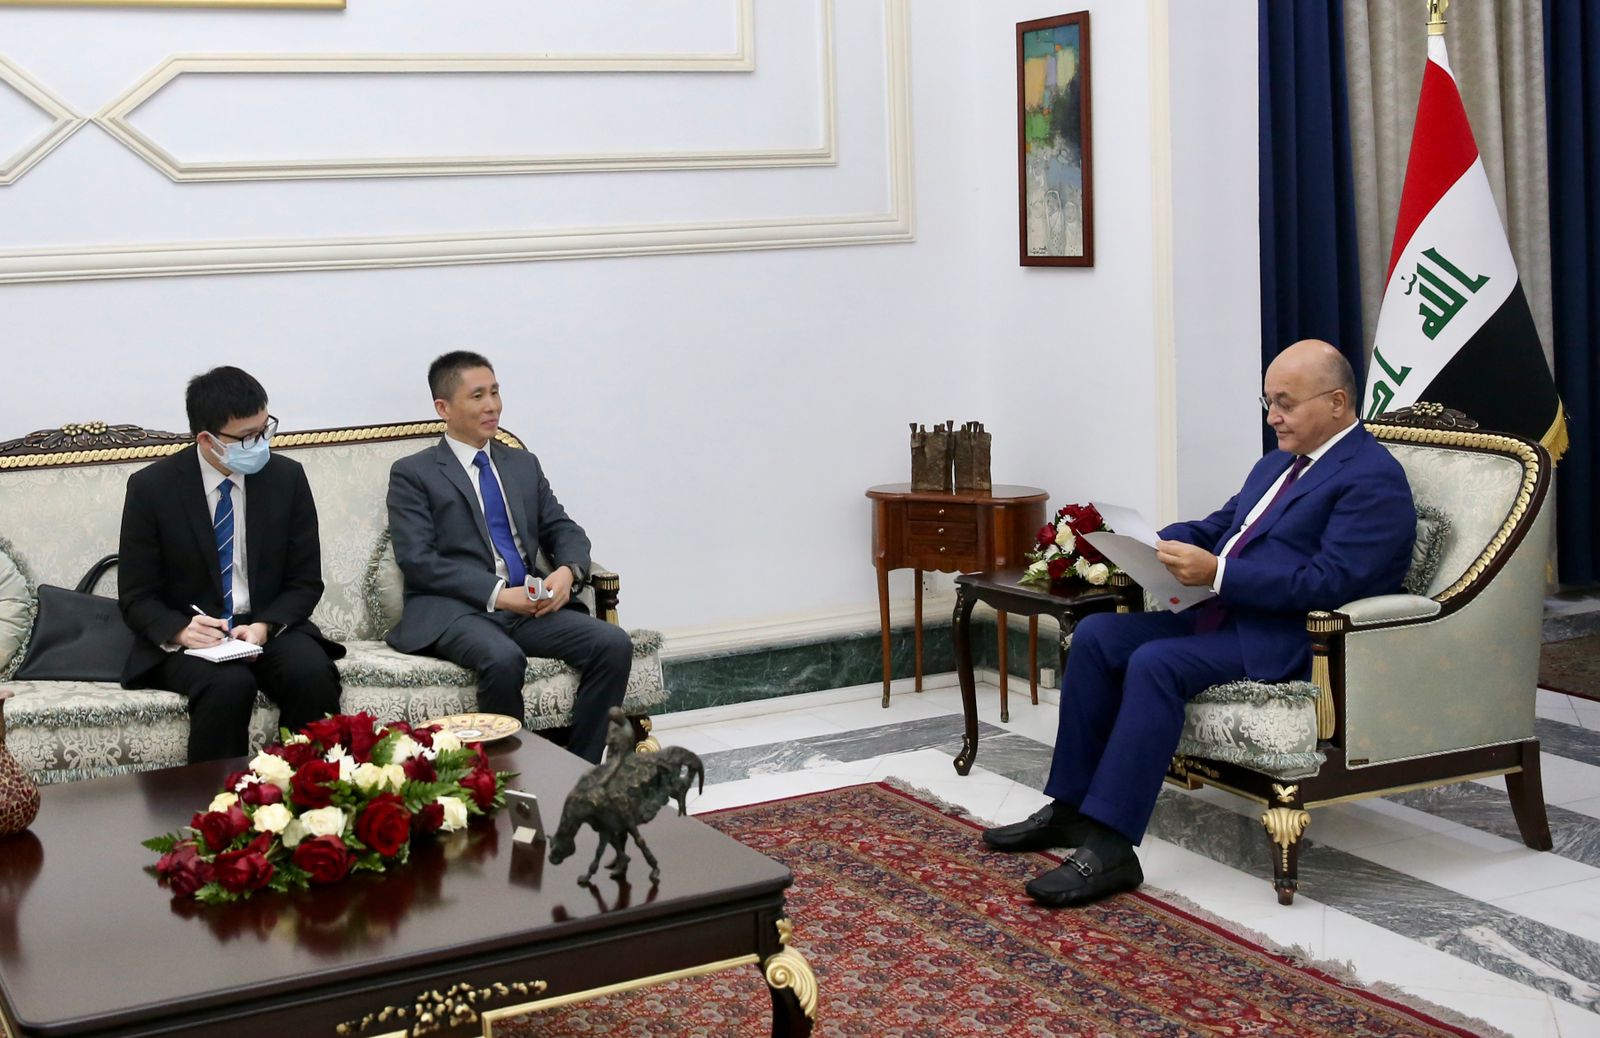 العراق والصين يؤكدان على تعزيز التعاون الاقتصادي بينهما